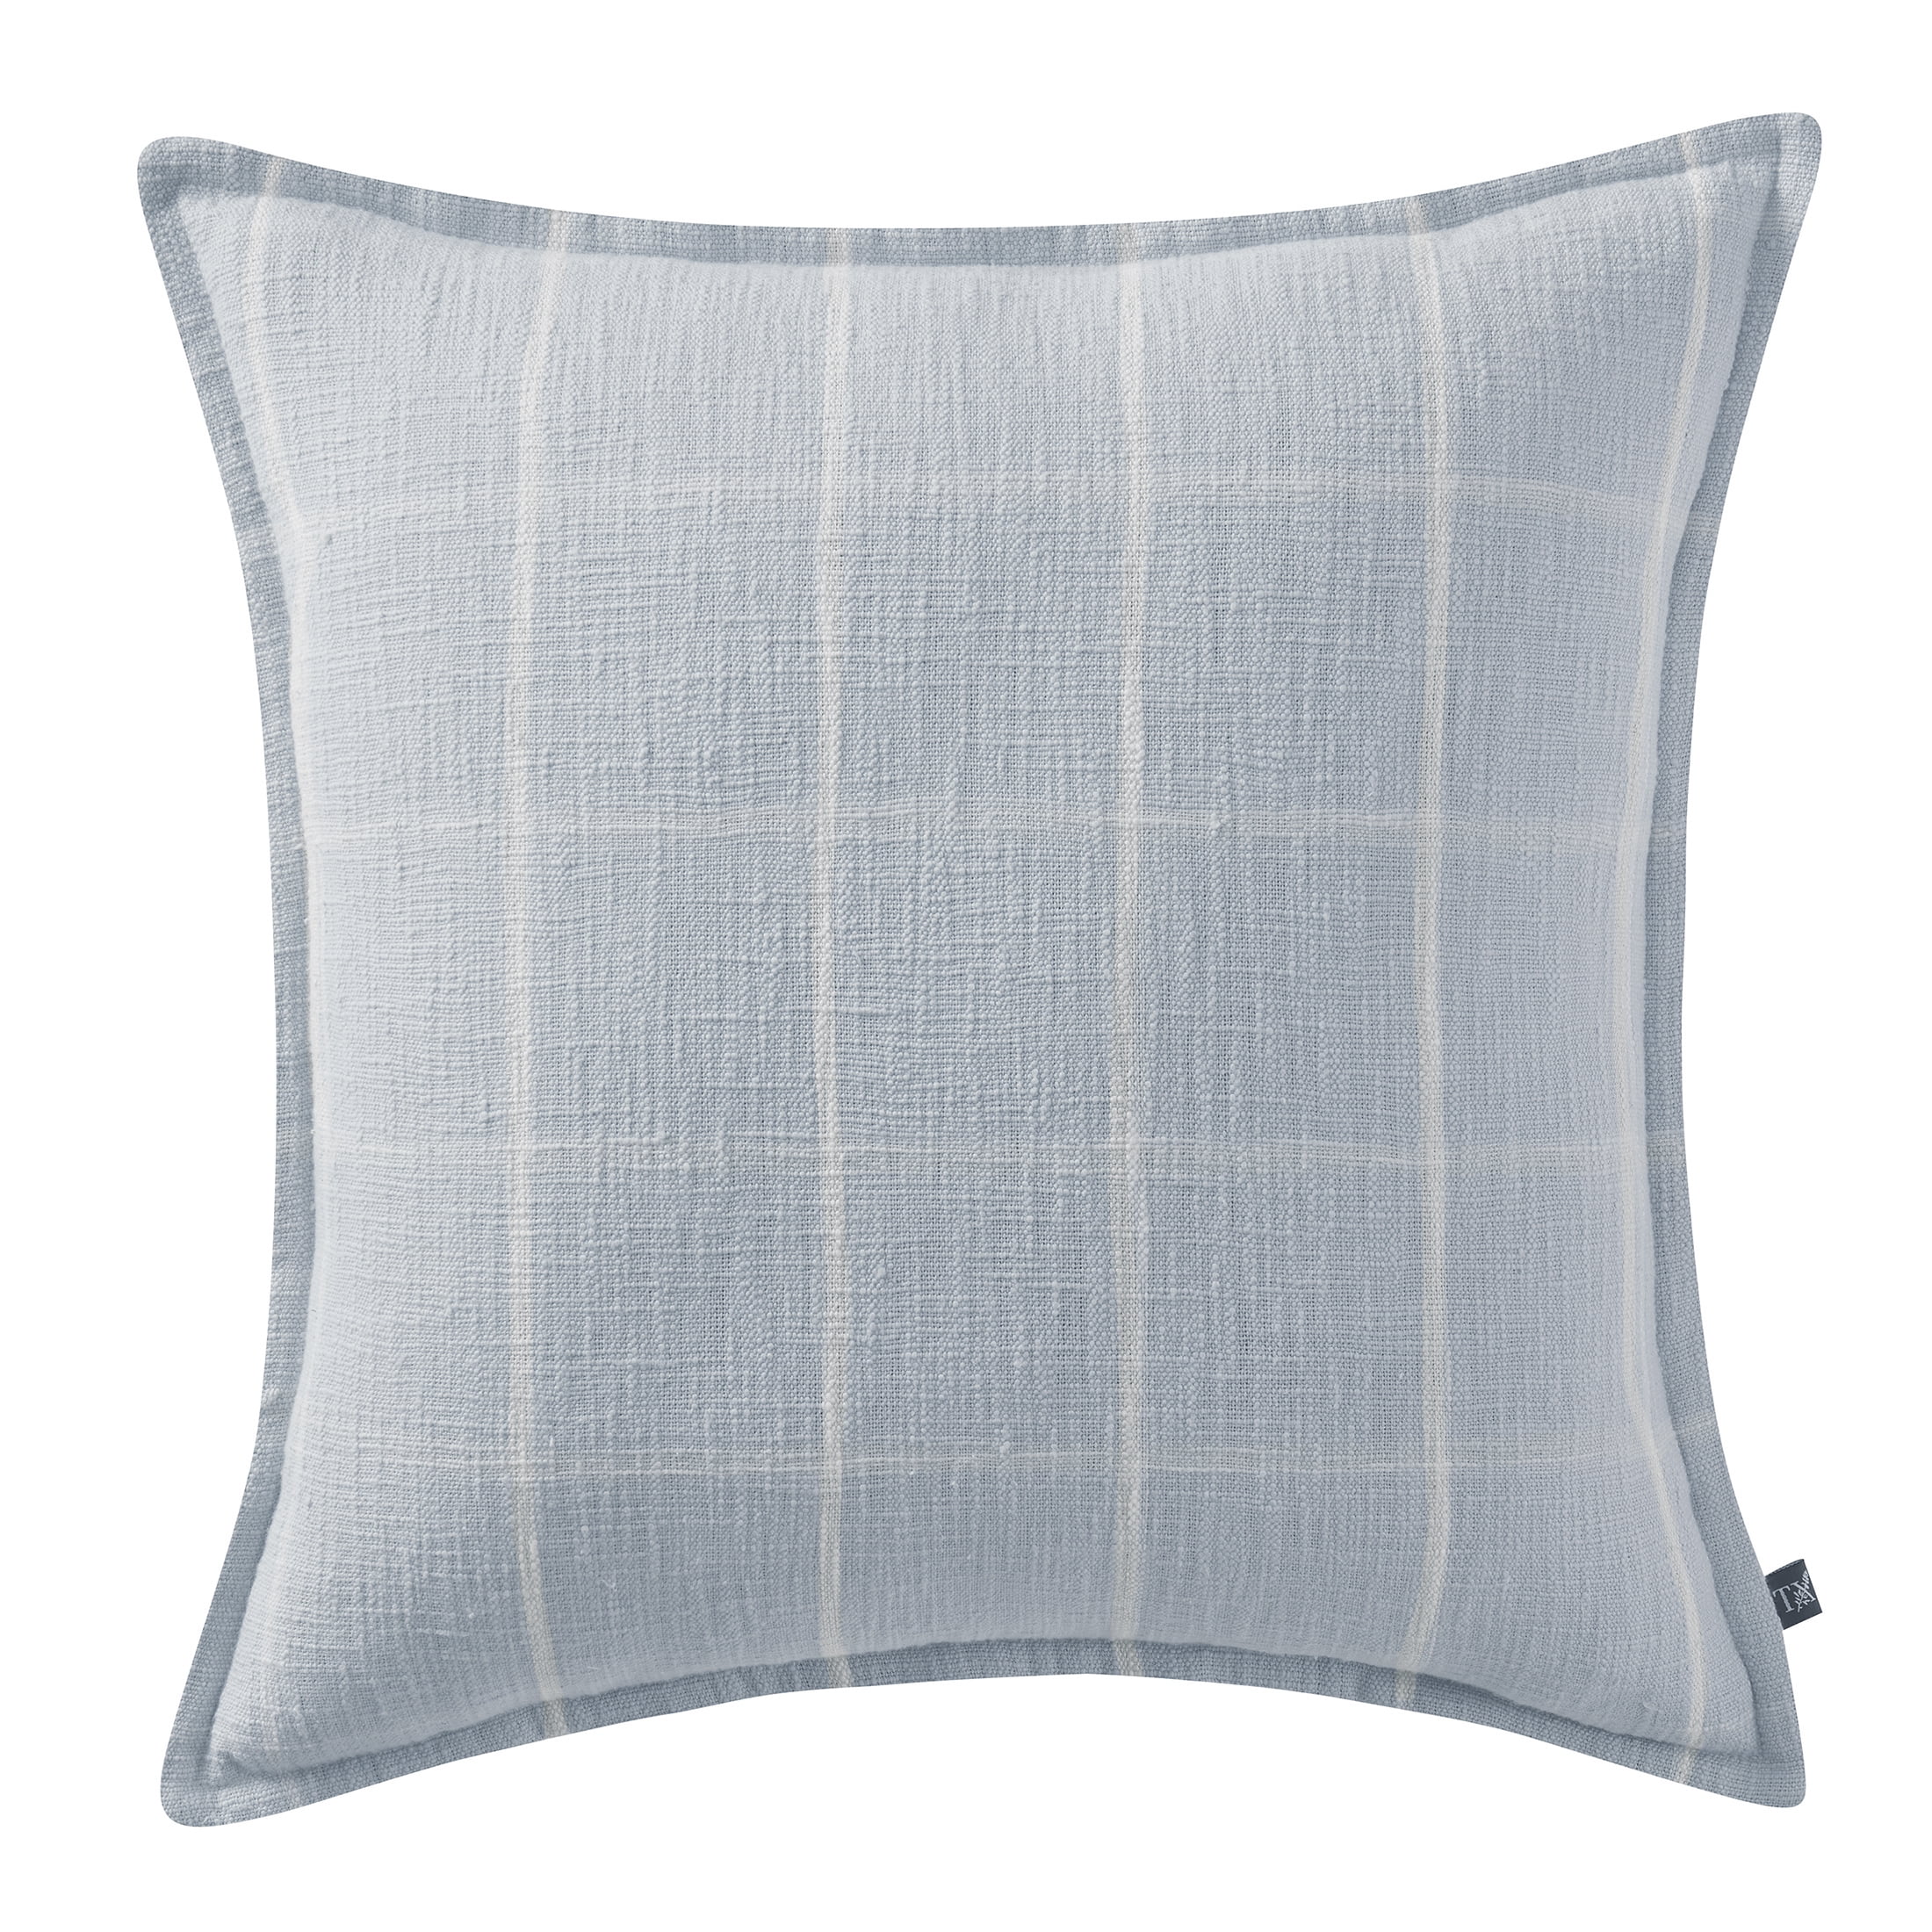 My Texas House Lainey Quatrefoil Cotton-Terry Decorative Pillow Cover, 22  x 22, Blush